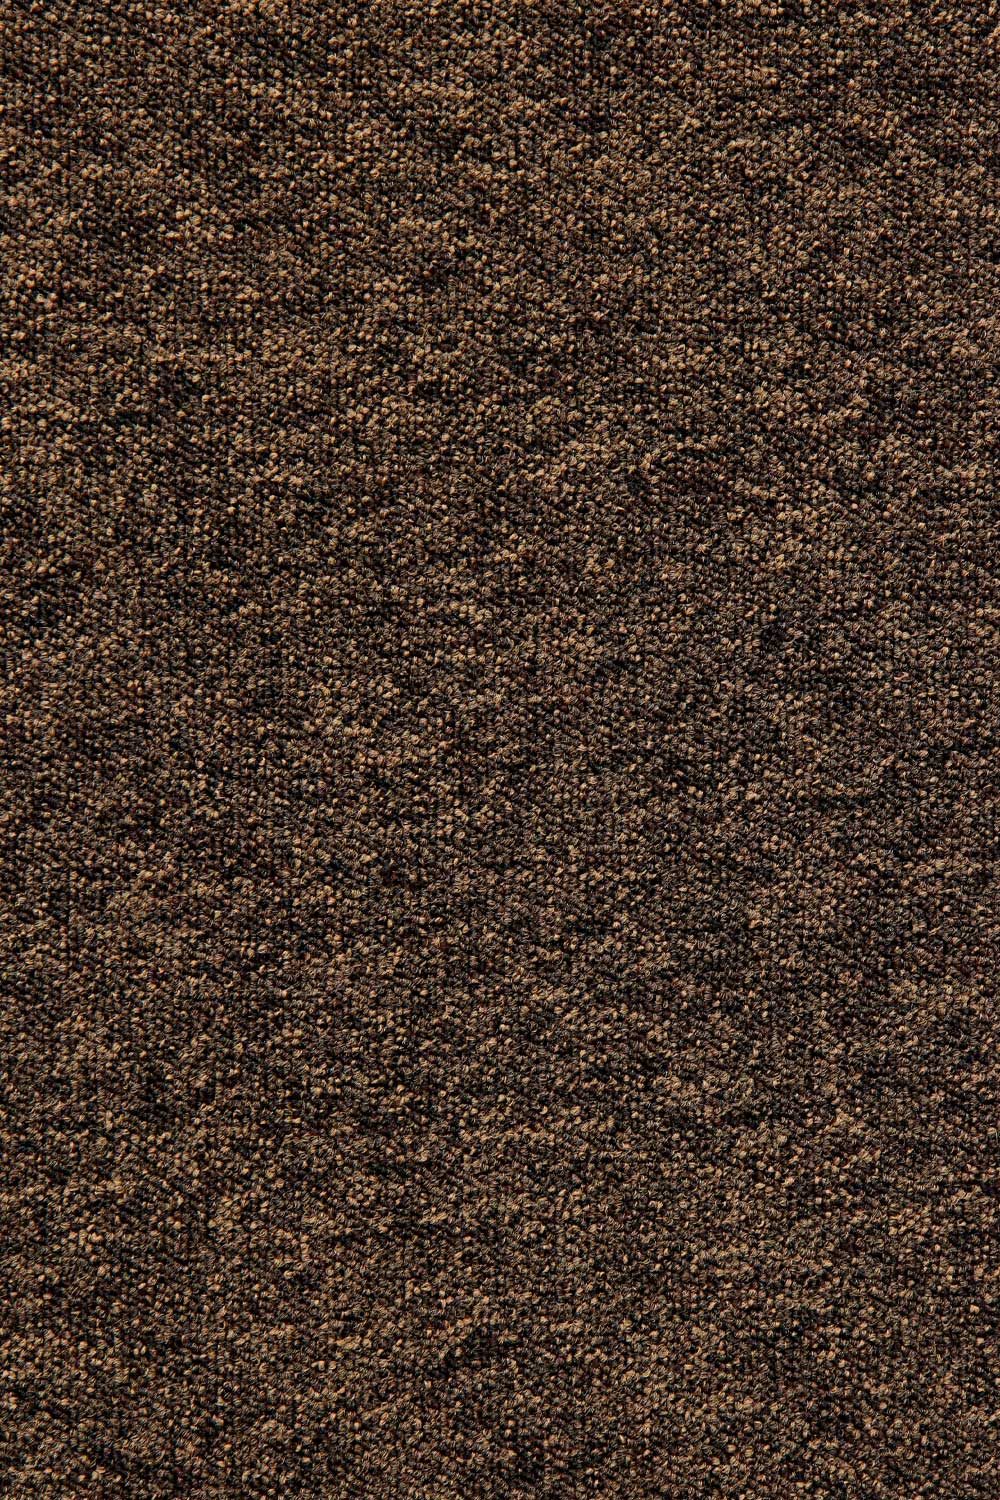 Metrážový koberec Lyon Solid 78